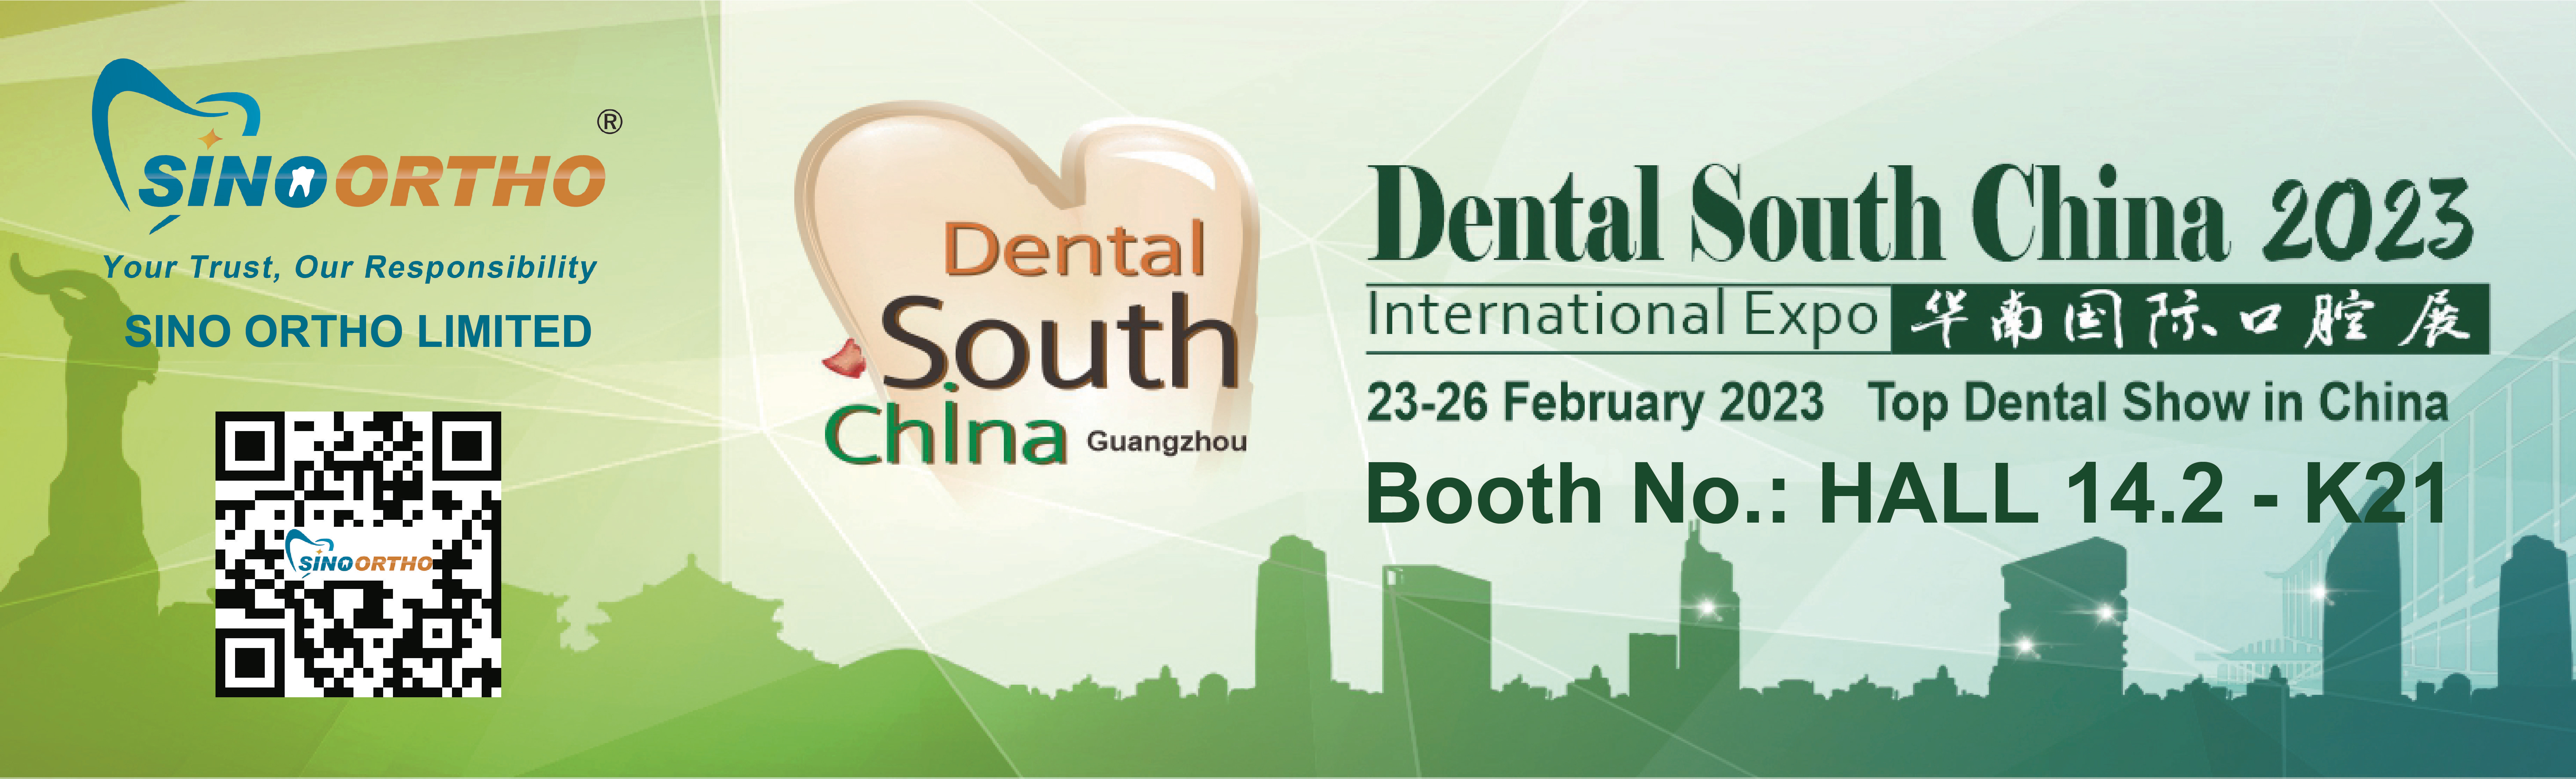 Exposición dental del sur de China 2023